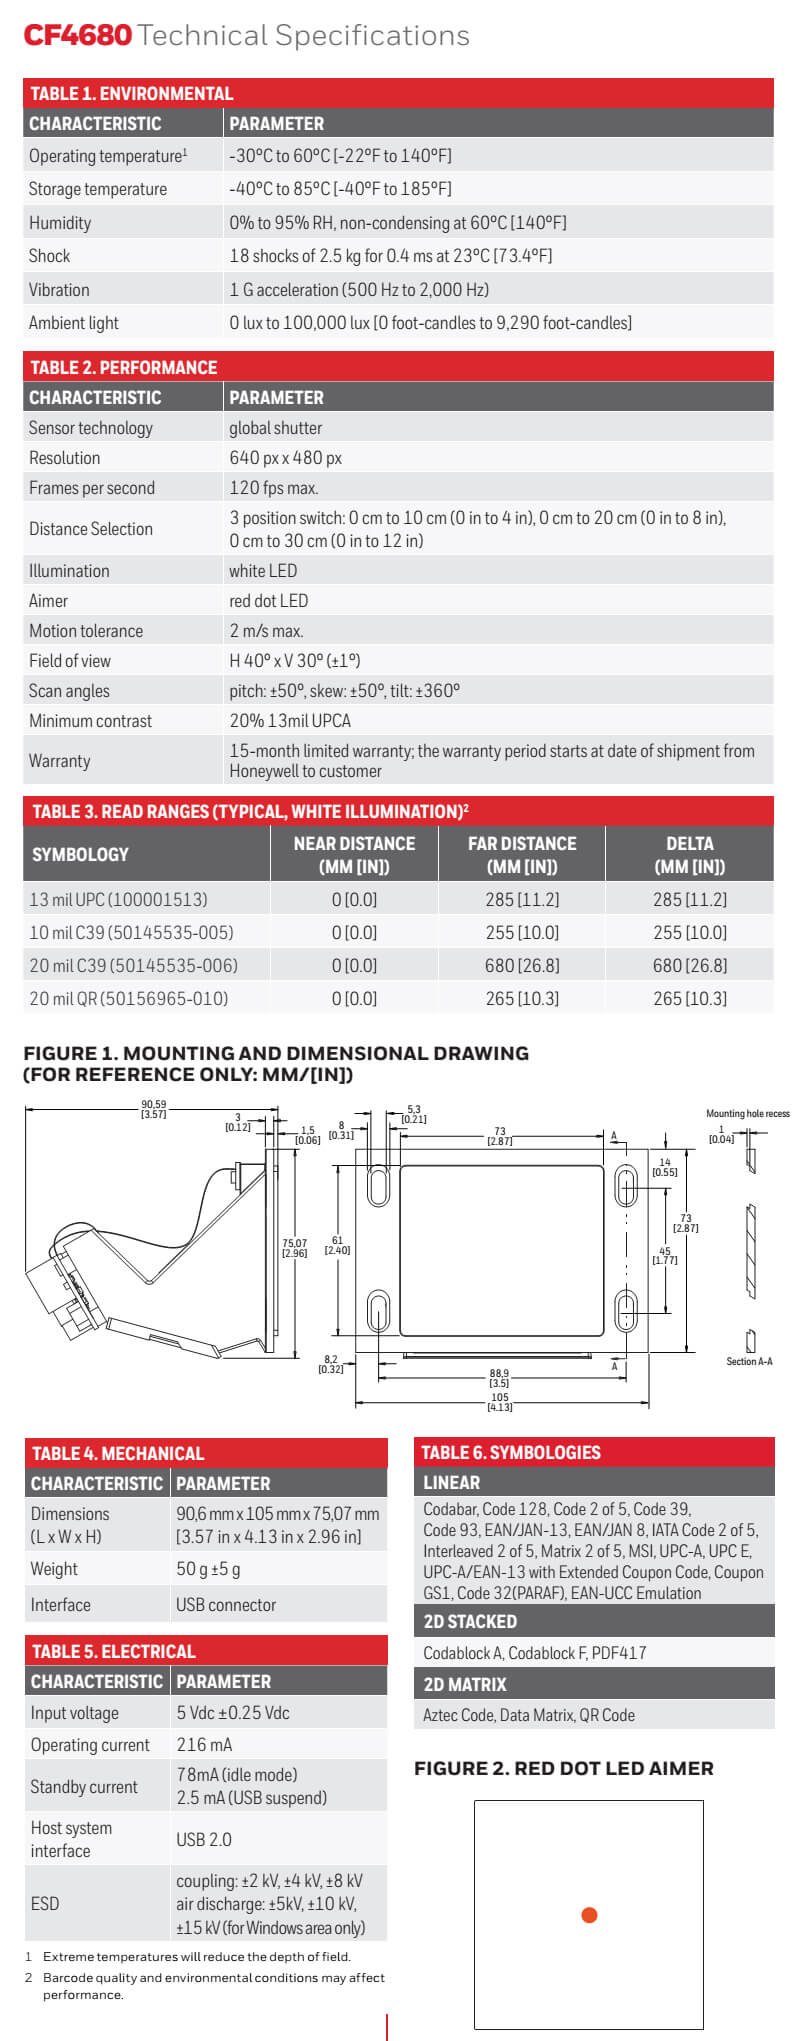 Honeywell CF4680 2D Imager Module Datasheet